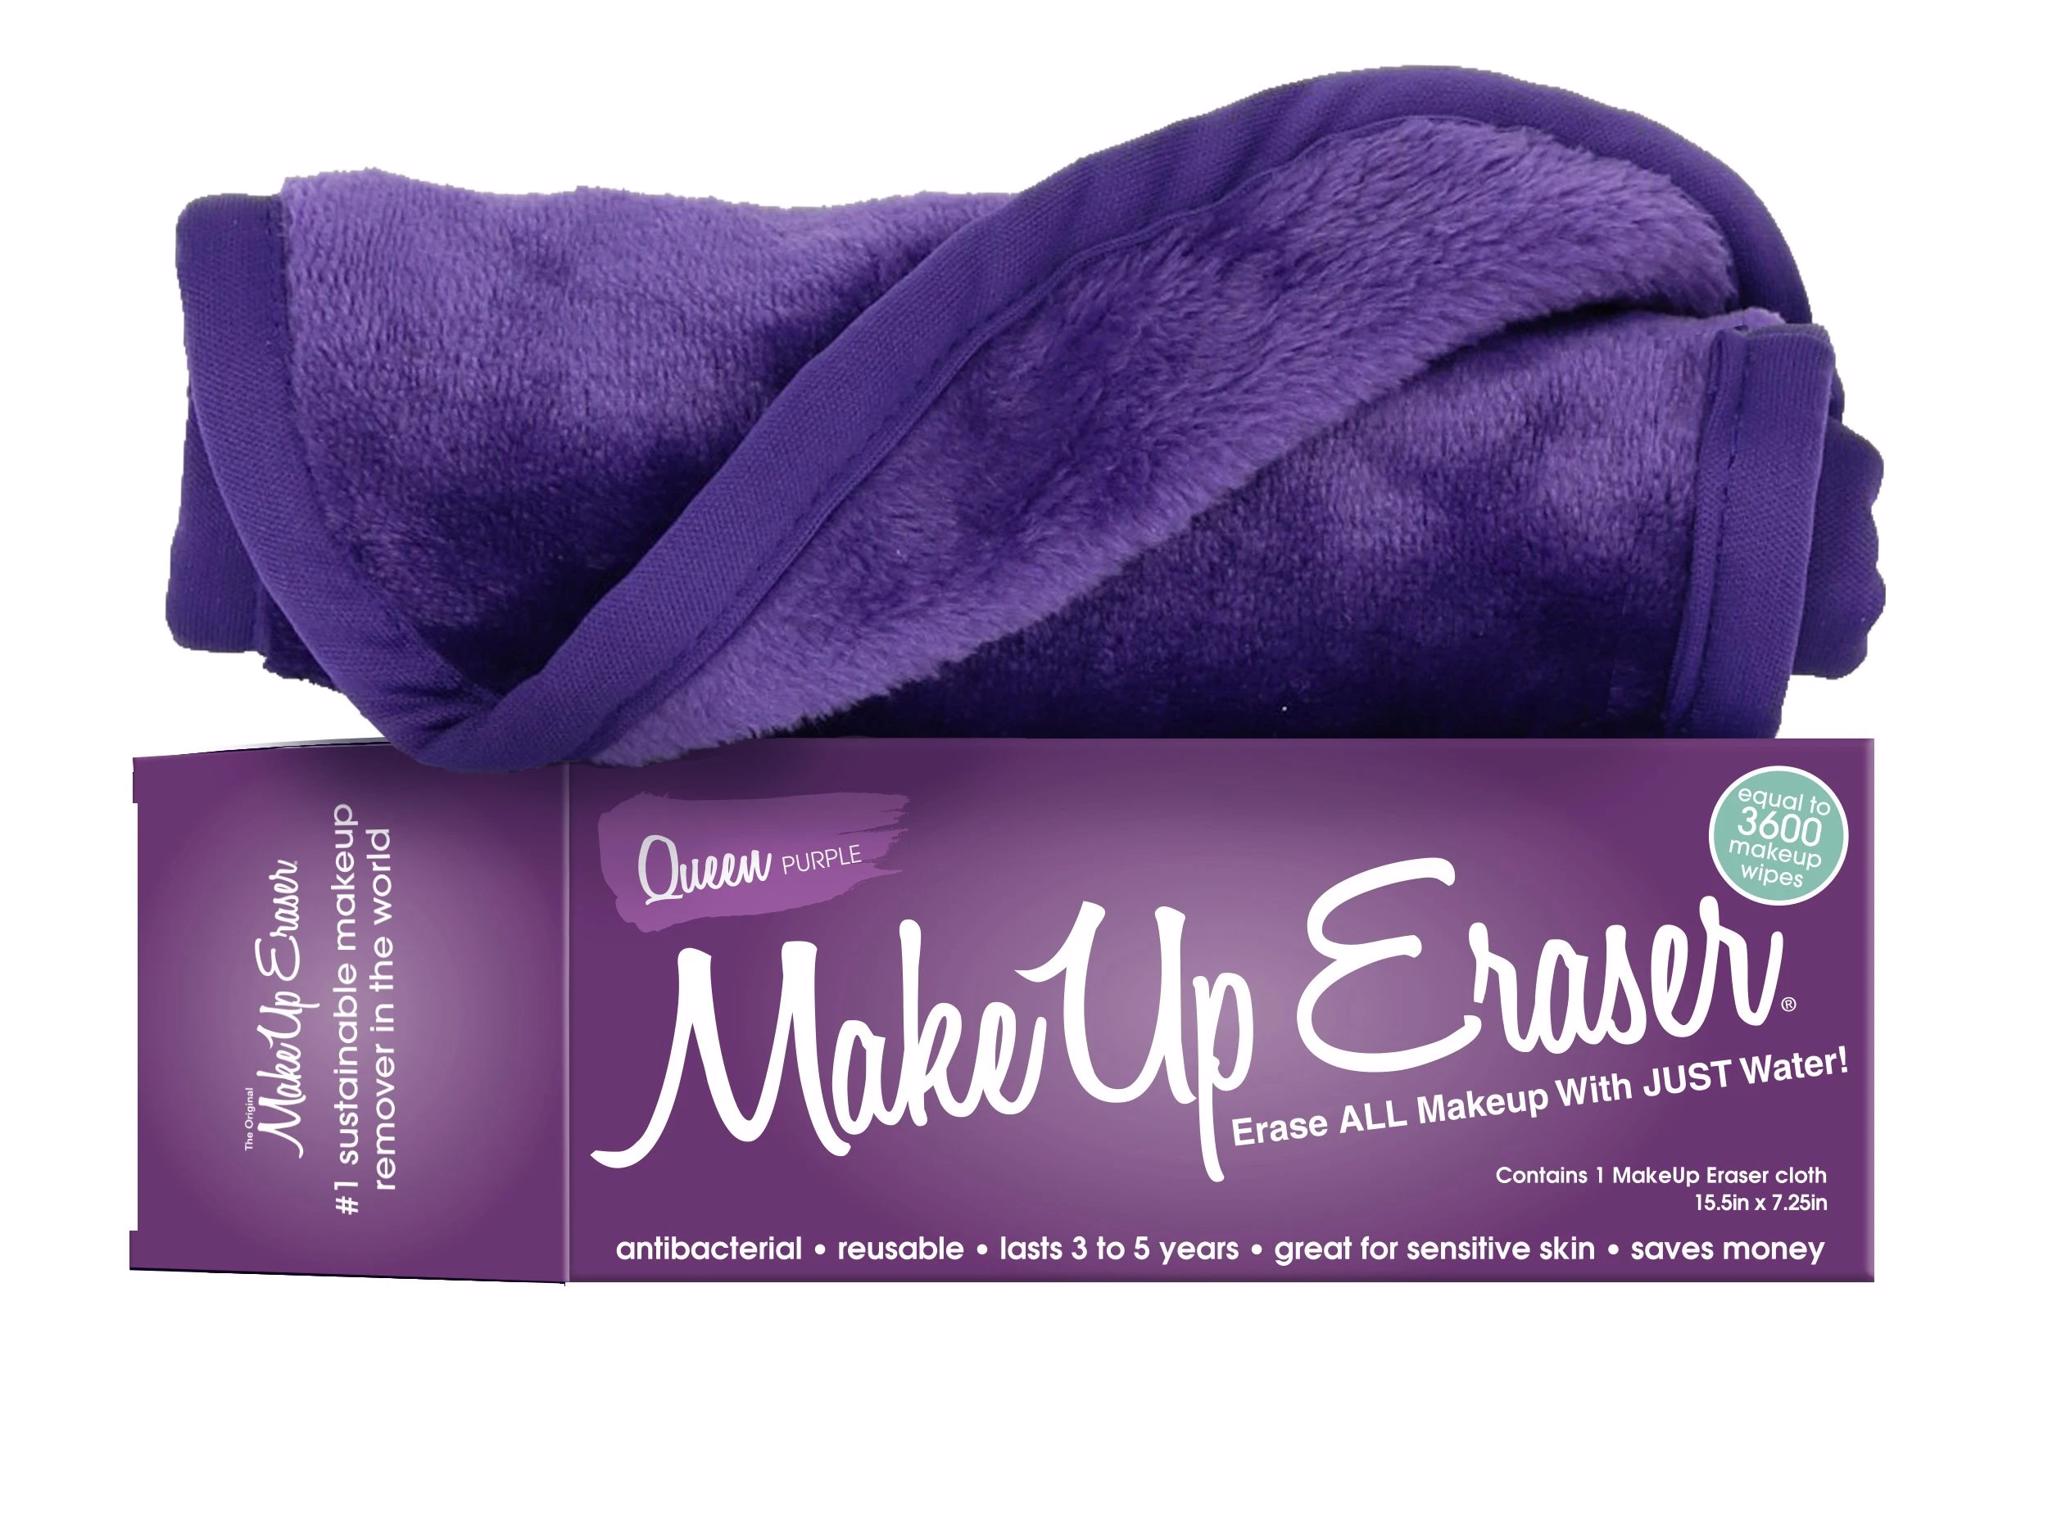 Makeup Eraser - The Original Makeup Eraser 2477